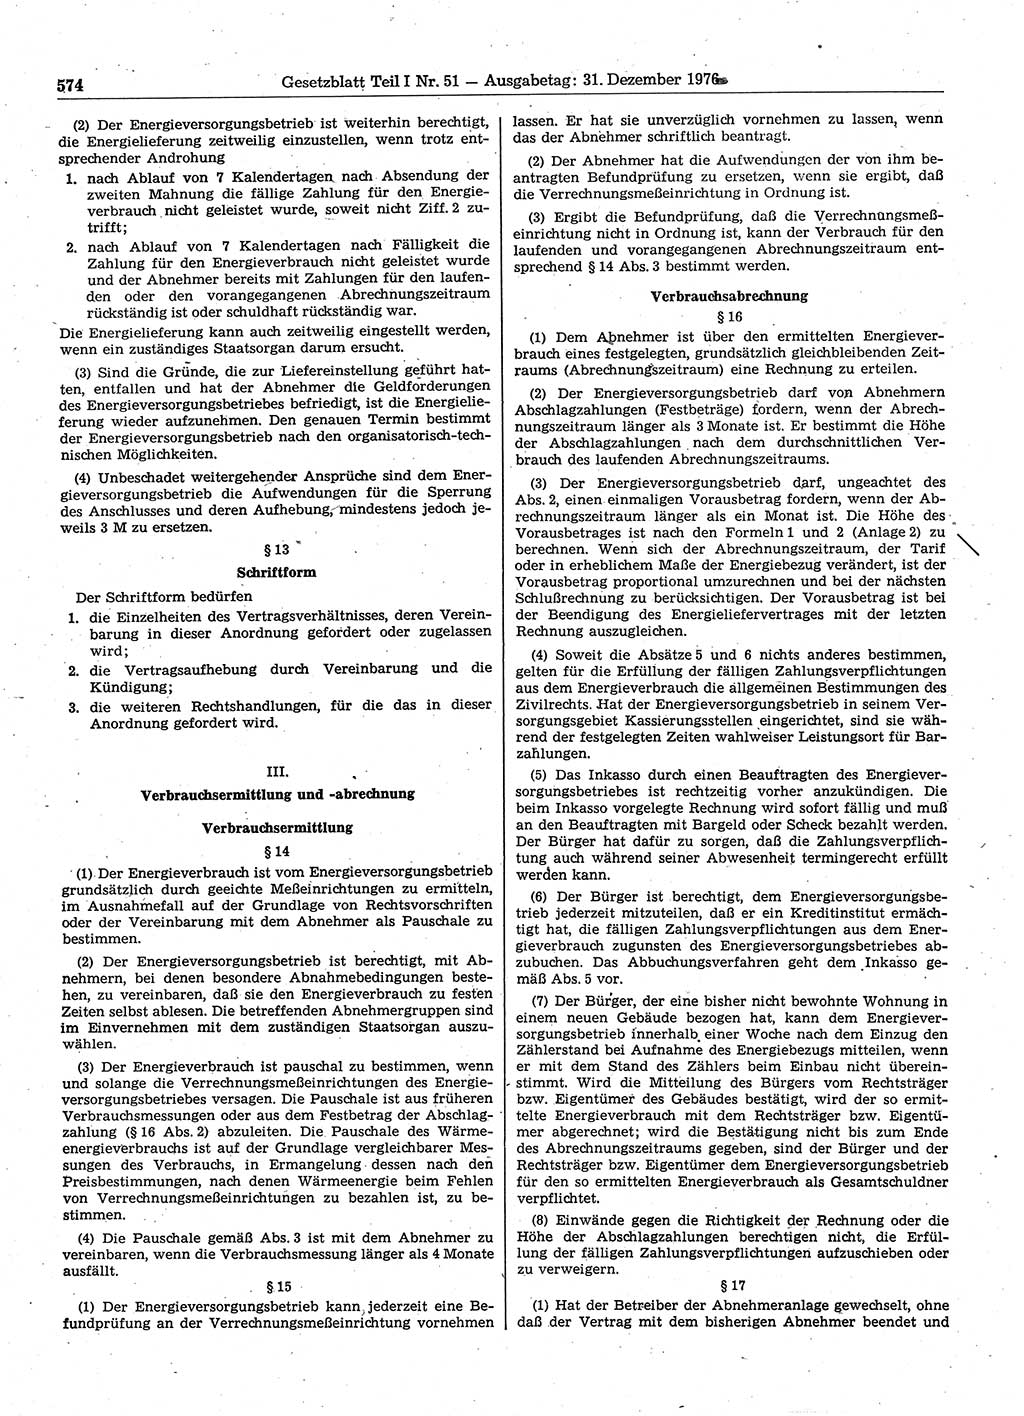 Gesetzblatt (GBl.) der Deutschen Demokratischen Republik (DDR) Teil Ⅰ 1976, Seite 574 (GBl. DDR Ⅰ 1976, S. 574)